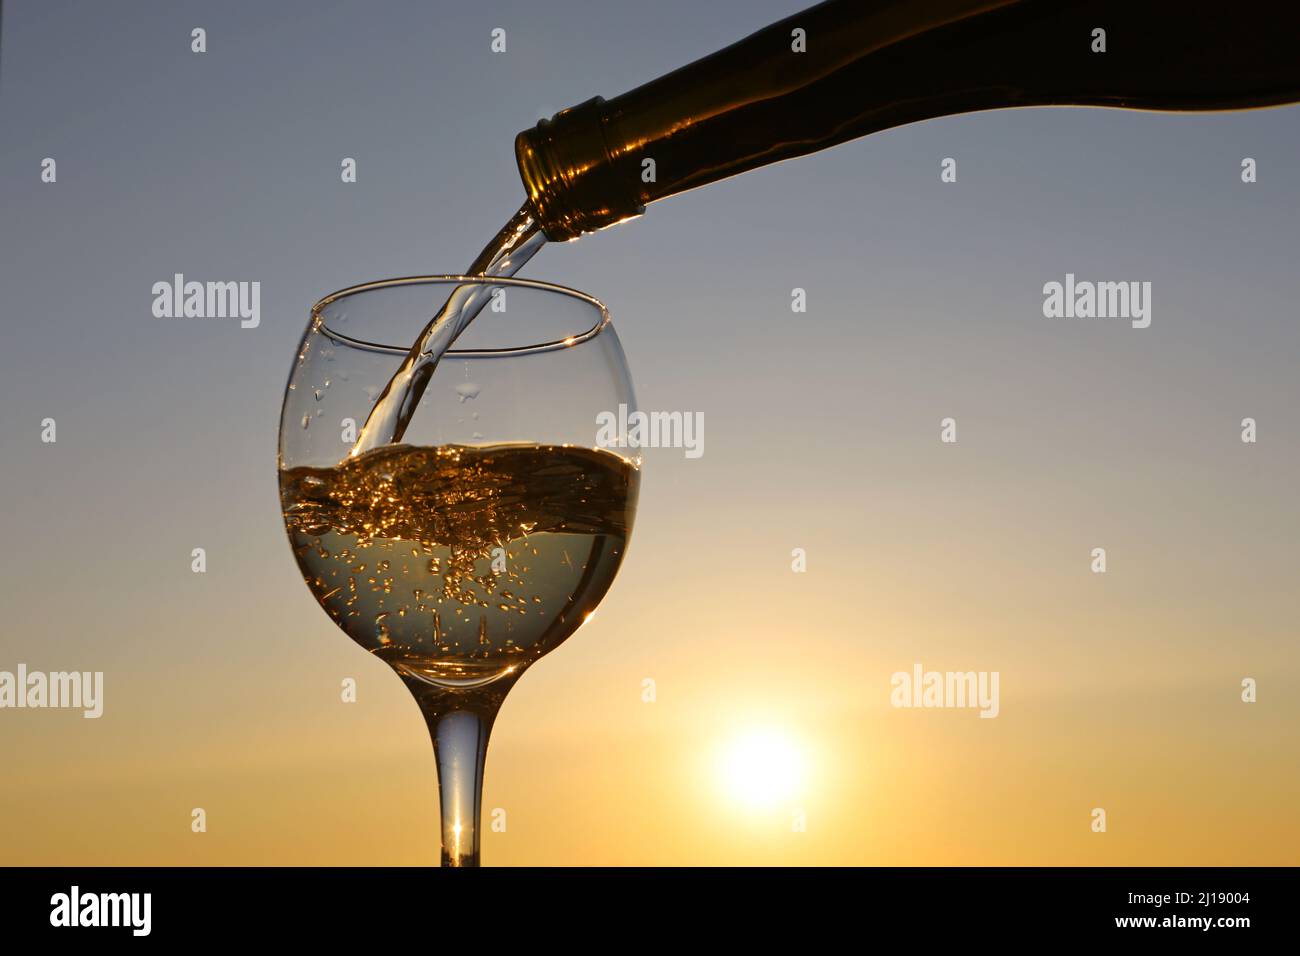 Verter vino blanco de una botella en la copa sobre el fondo del cielo de la puesta de sol. Celebración, cena romántica con bebida alcohólica Foto de stock